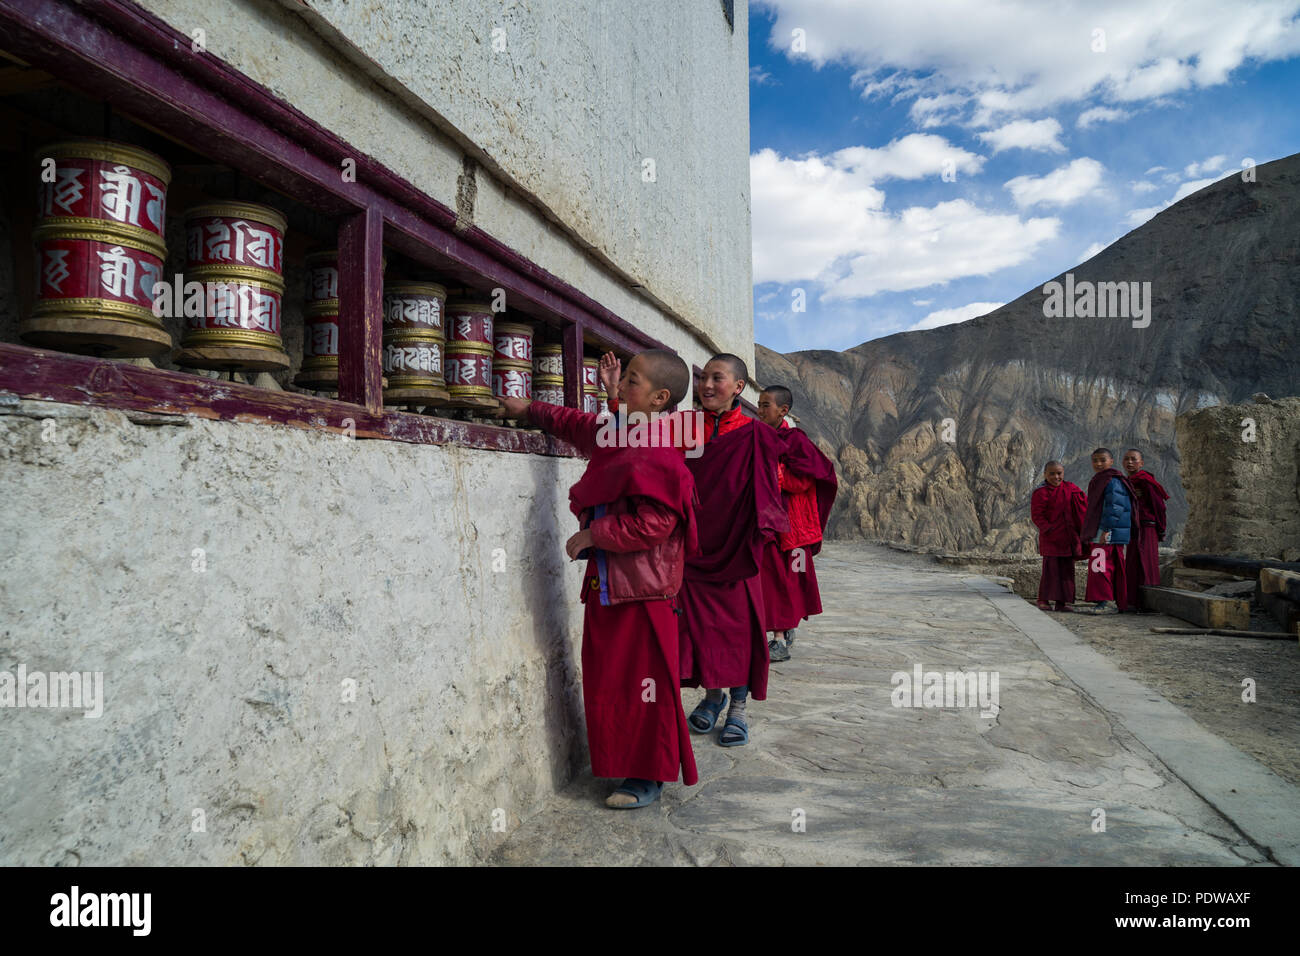 LADAKH, Indien - 6. Mai'2015: Lillte tibetische Mönche beten drehende Räder im Tempel. Dieser Tempel ist einer der heiligsten Plätze im tibetischen Buddhismus. Stockfoto